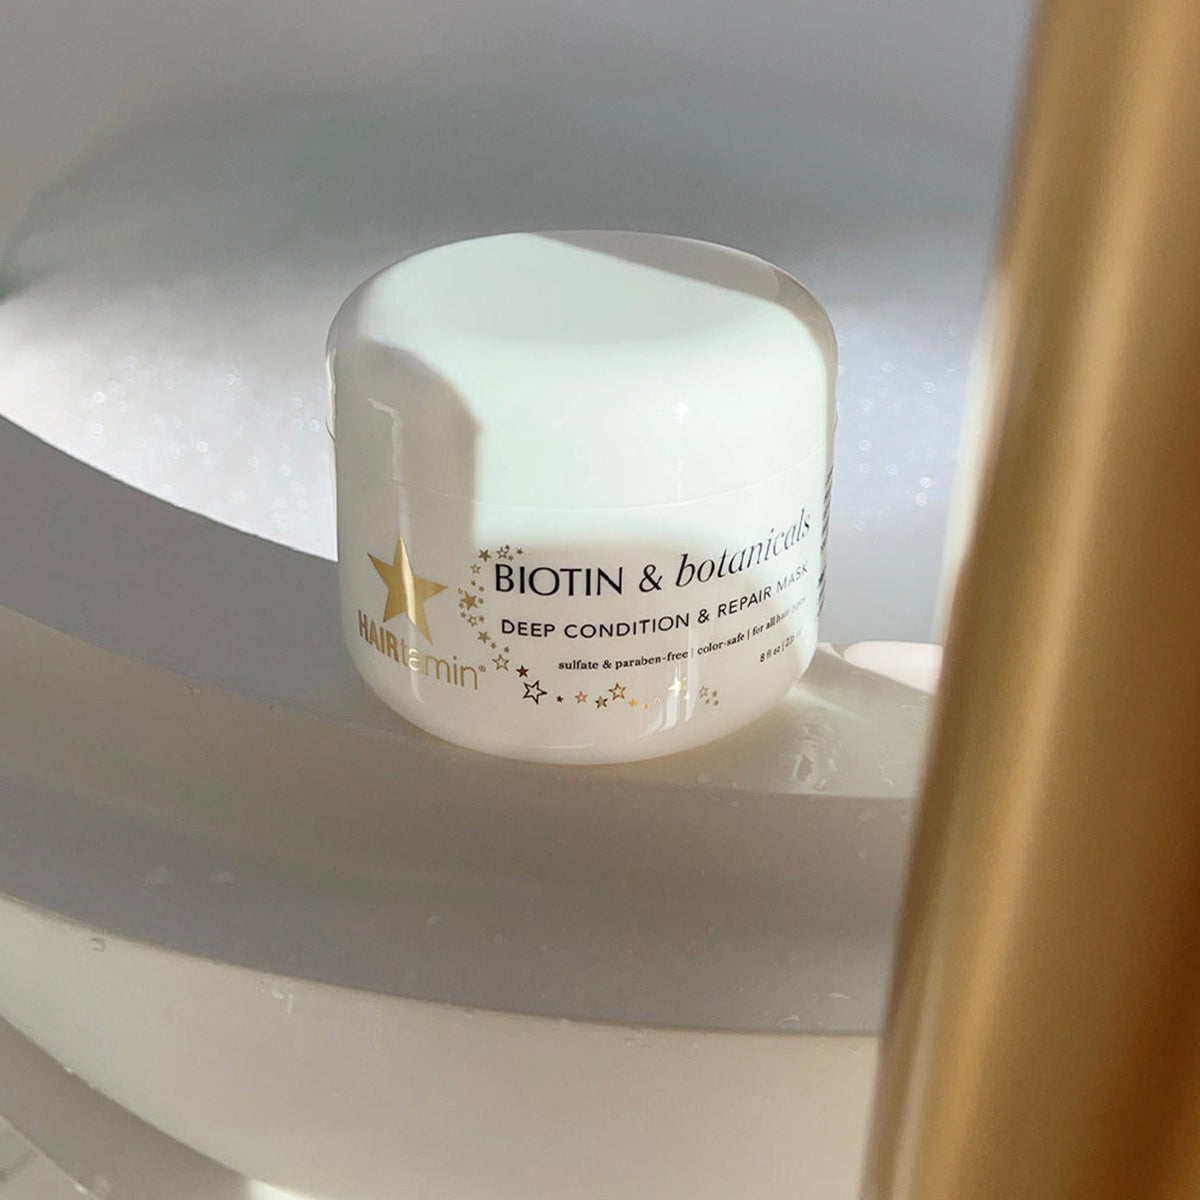 Die HAIRtamin Biotin & Botanicals Deep Condition & Repair Hair Mask am Rand einer Badewanne